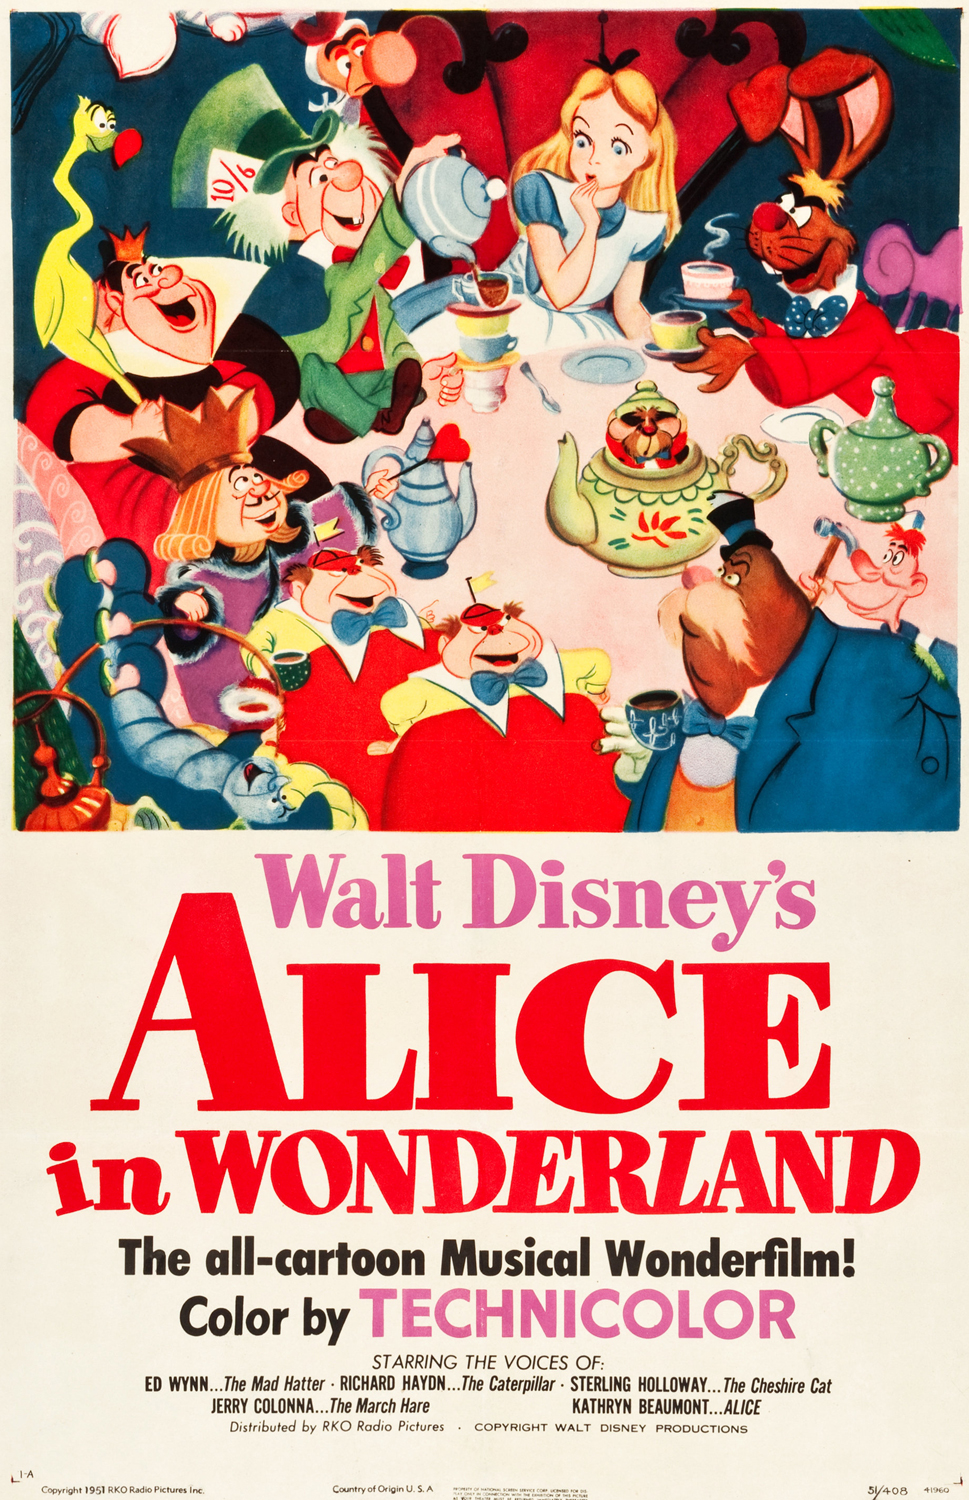 Livre Disney Alice au pays des merveilles